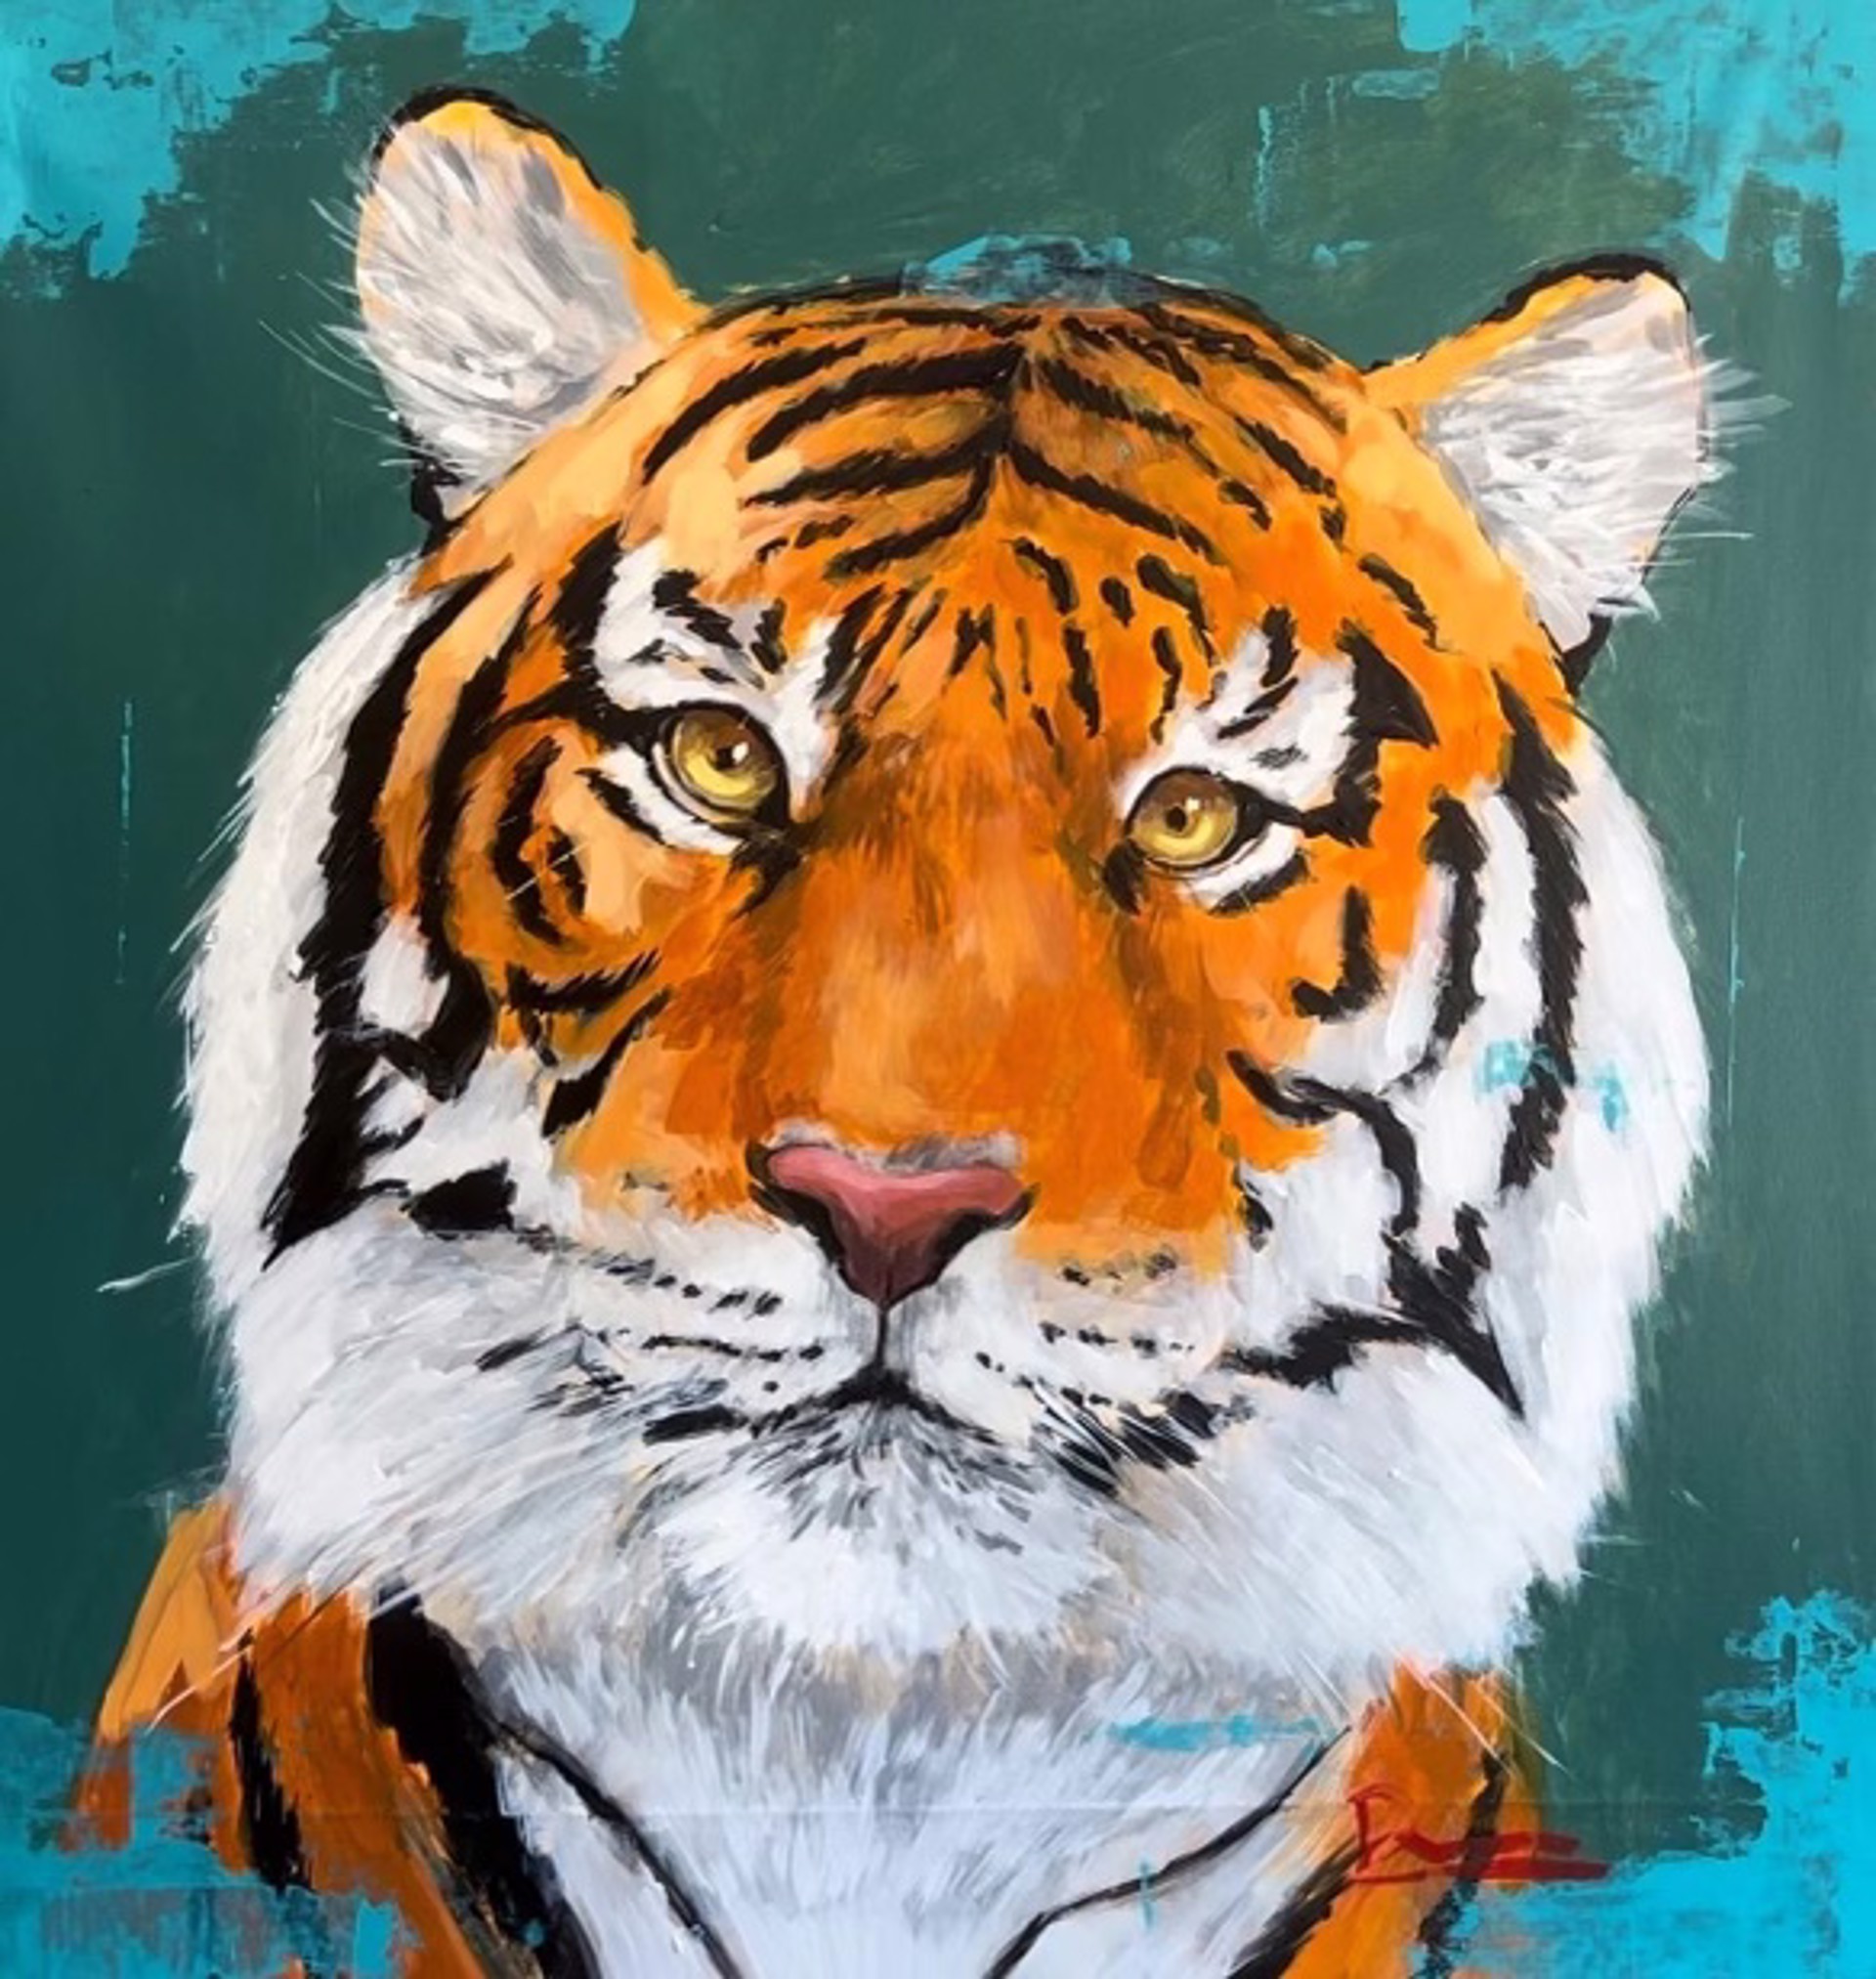 Tiger Green by Dominic Mattioli